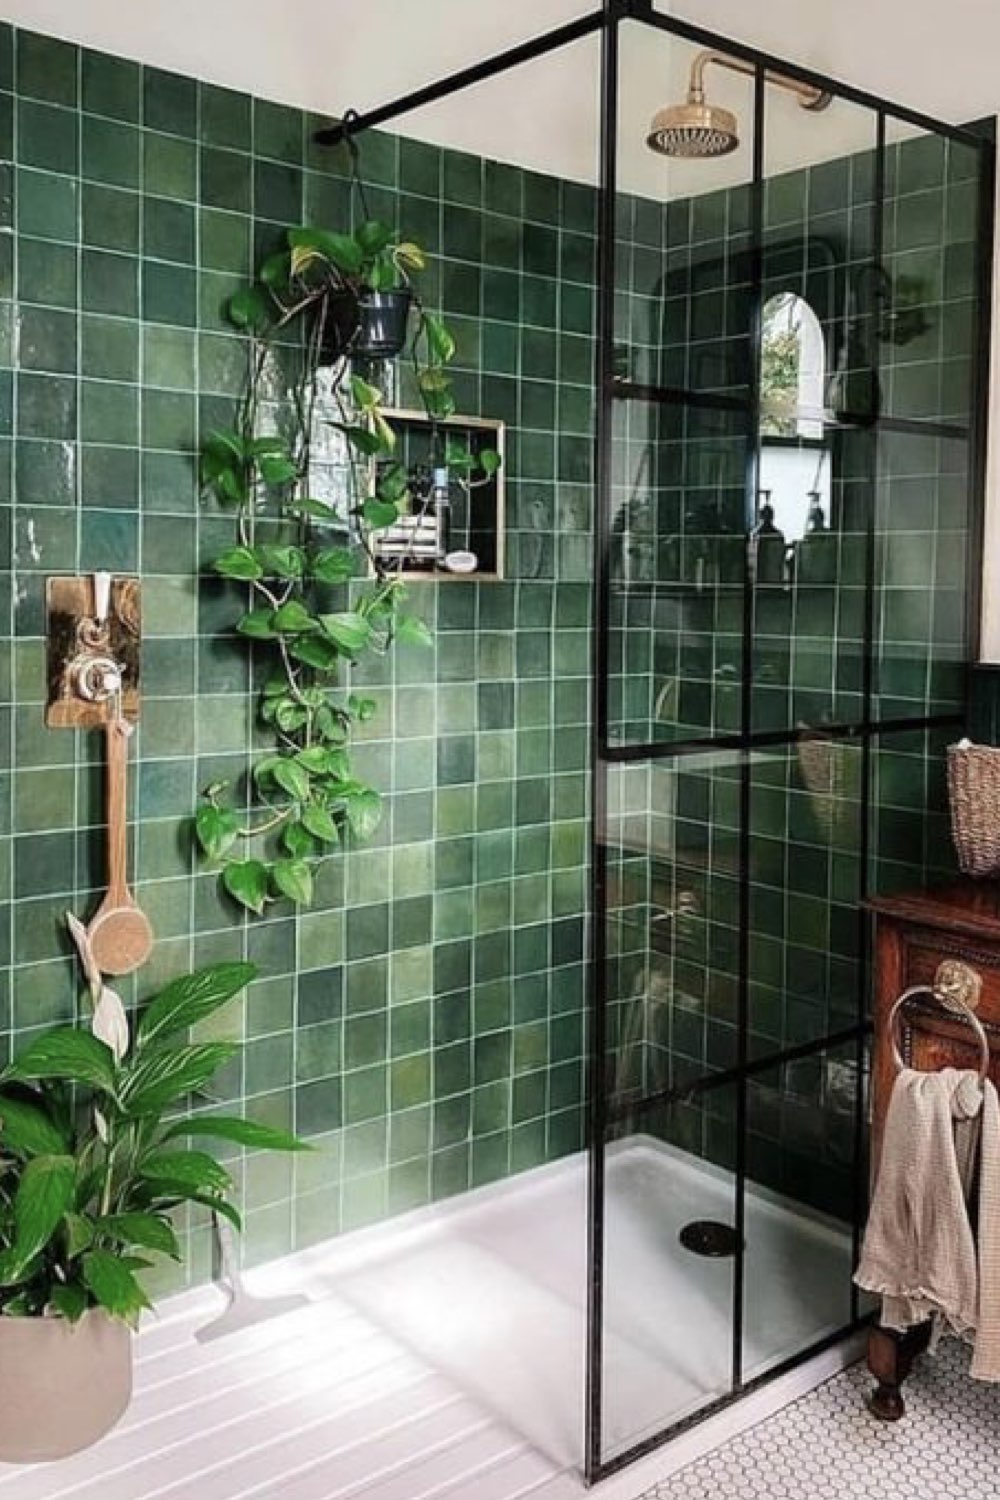 salle de bain douche deco detente zellige carrelage mural vert paroi verrière noire moderne et chic